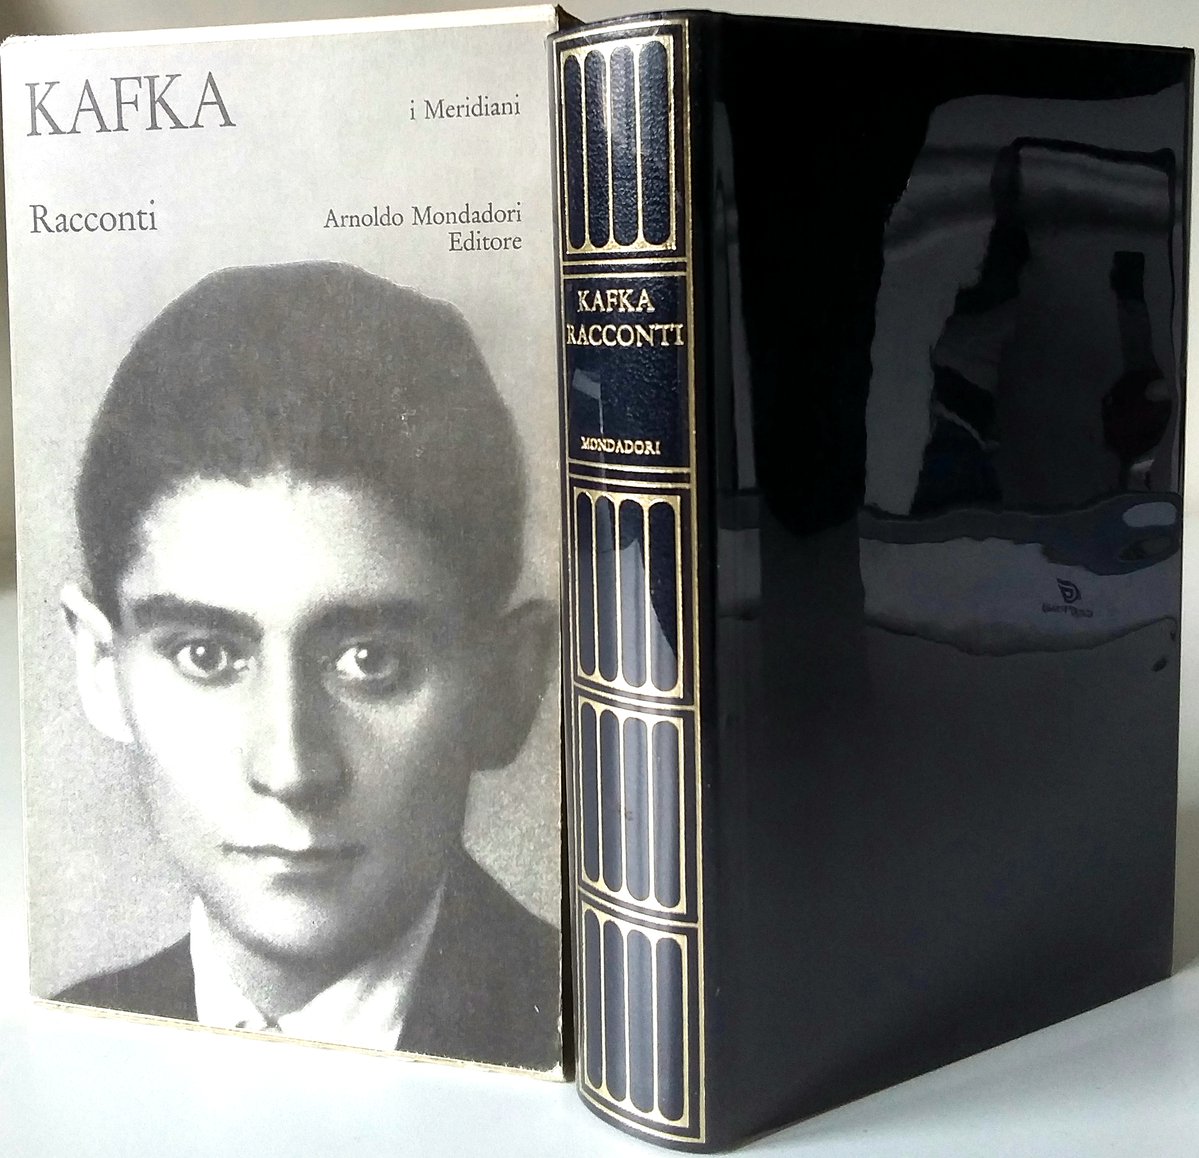 'Undici figli'
Ho undici figli.
Il primo è fisicamente poco appariscente, ma serio e intelligente, pure non ho molta stima di lui, benché, come figlio, lo ami come tutti gli altri.
Franz #Kafka100
#incipitprimavera
#scritturebrevi